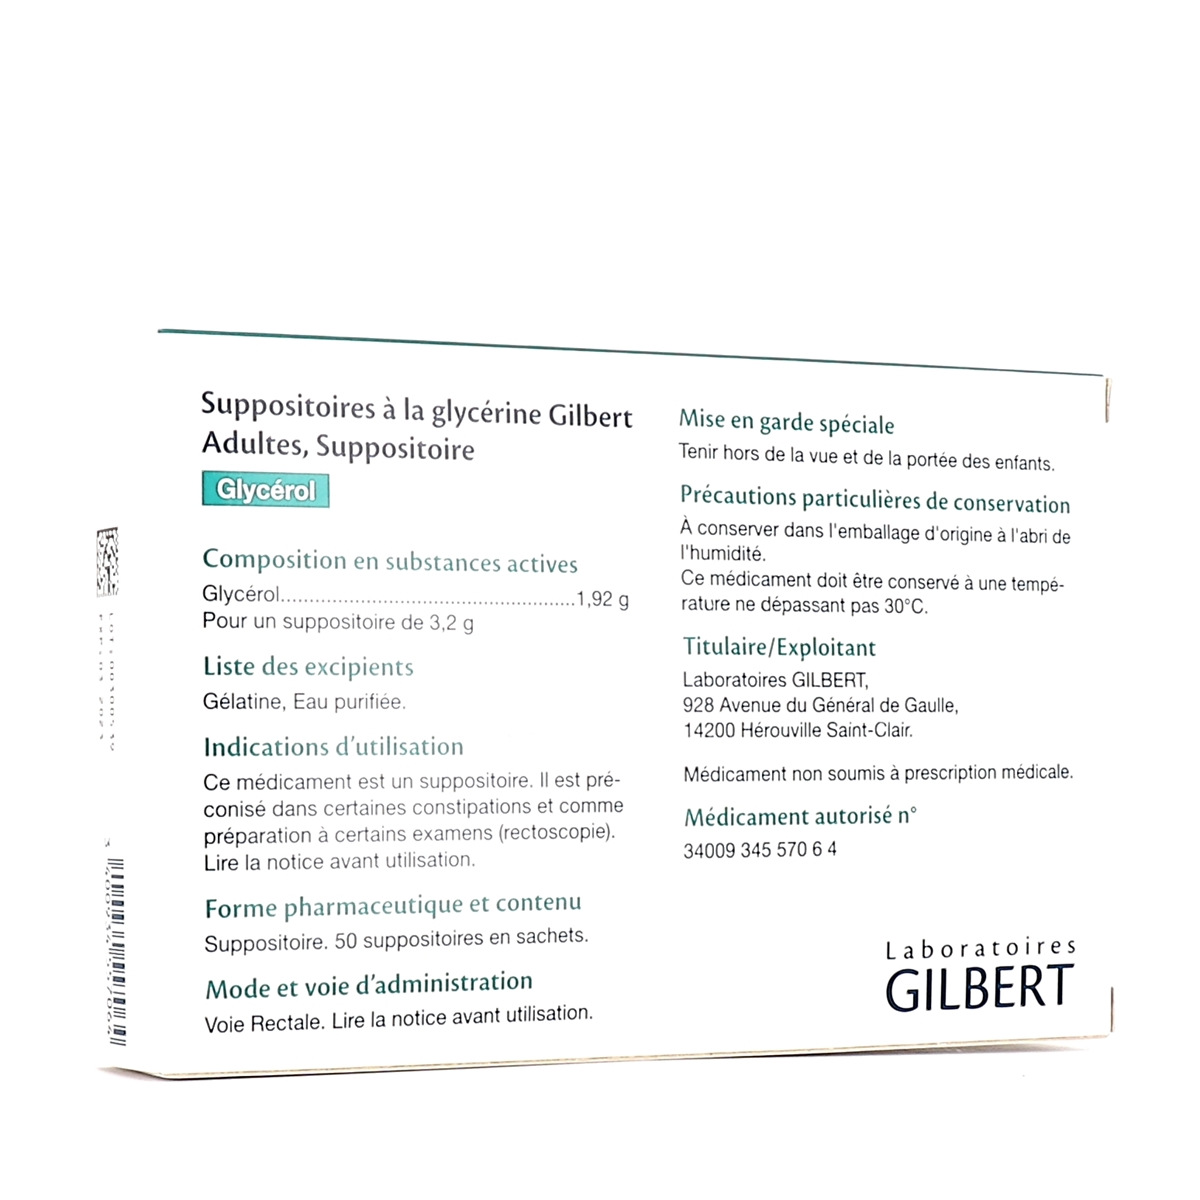 Suppositoires à la glycérine nourrissons Gilbert